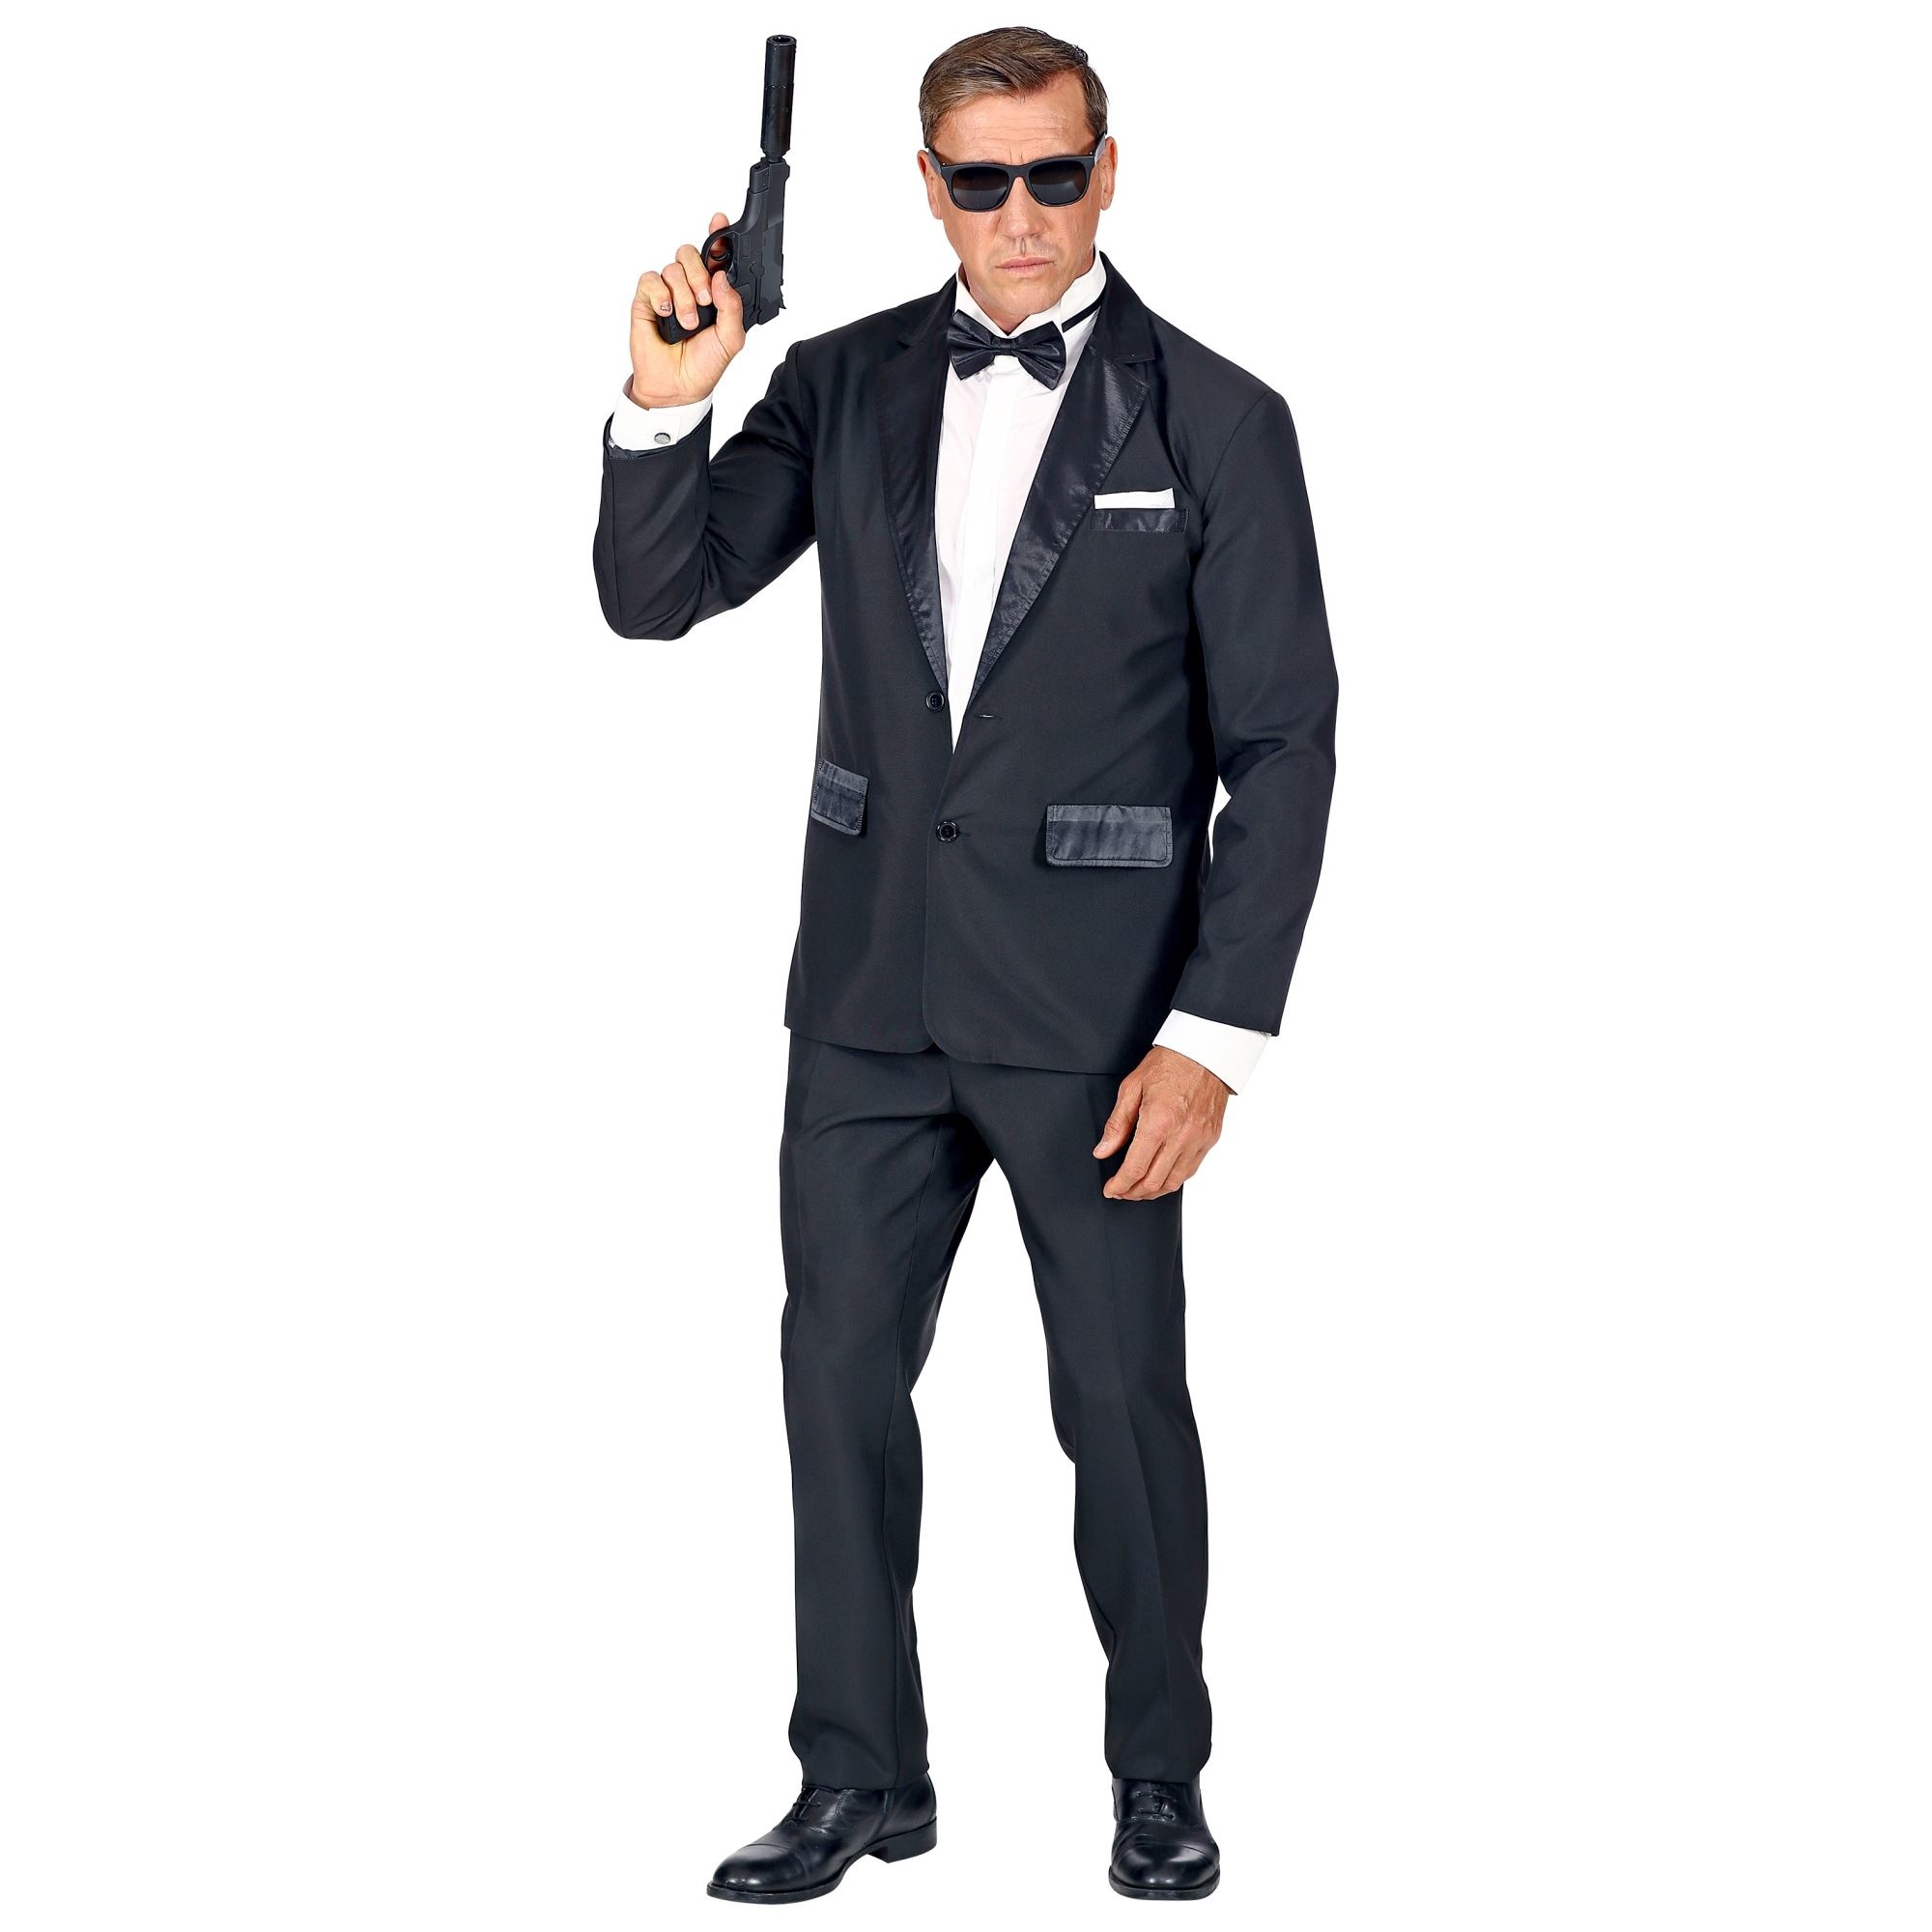 Widmann - James Bond Kostuum - 007 Bond Smoking - Man - zwart - Medium - Carnavalskleding - Verkleedkleding